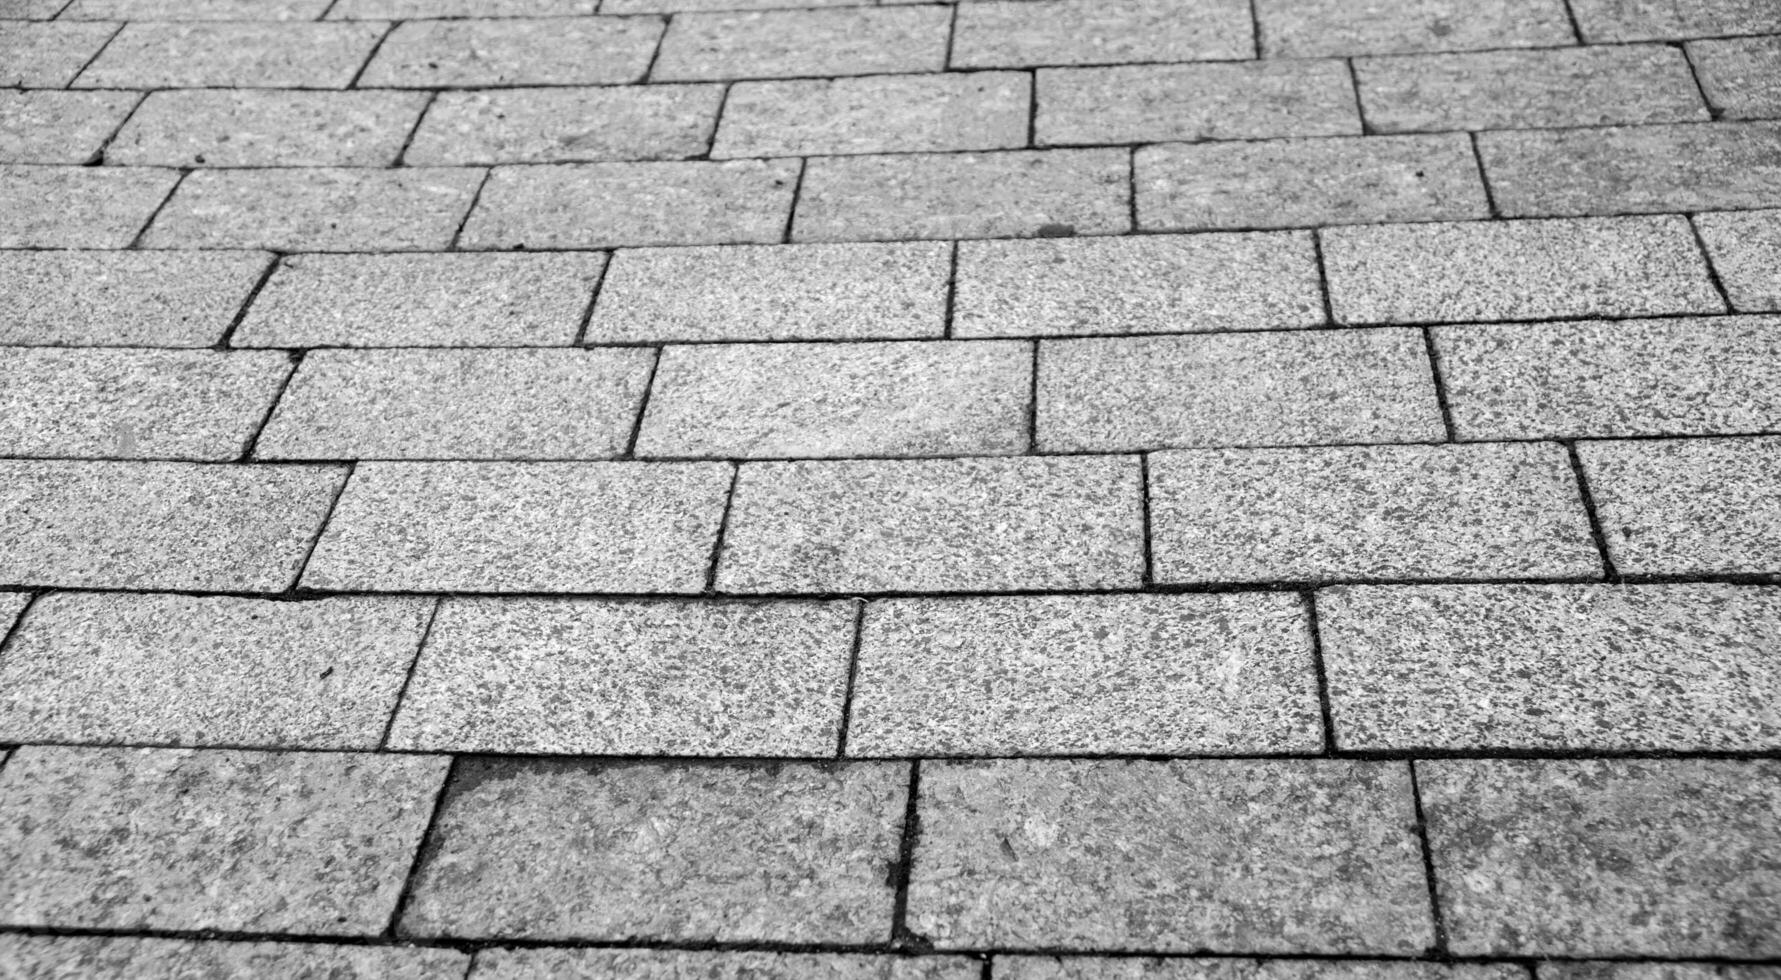 stad väg trottoar tillverkad av tegelstenar och stenar, väg textur i detalj svart och vit bakgrund foto